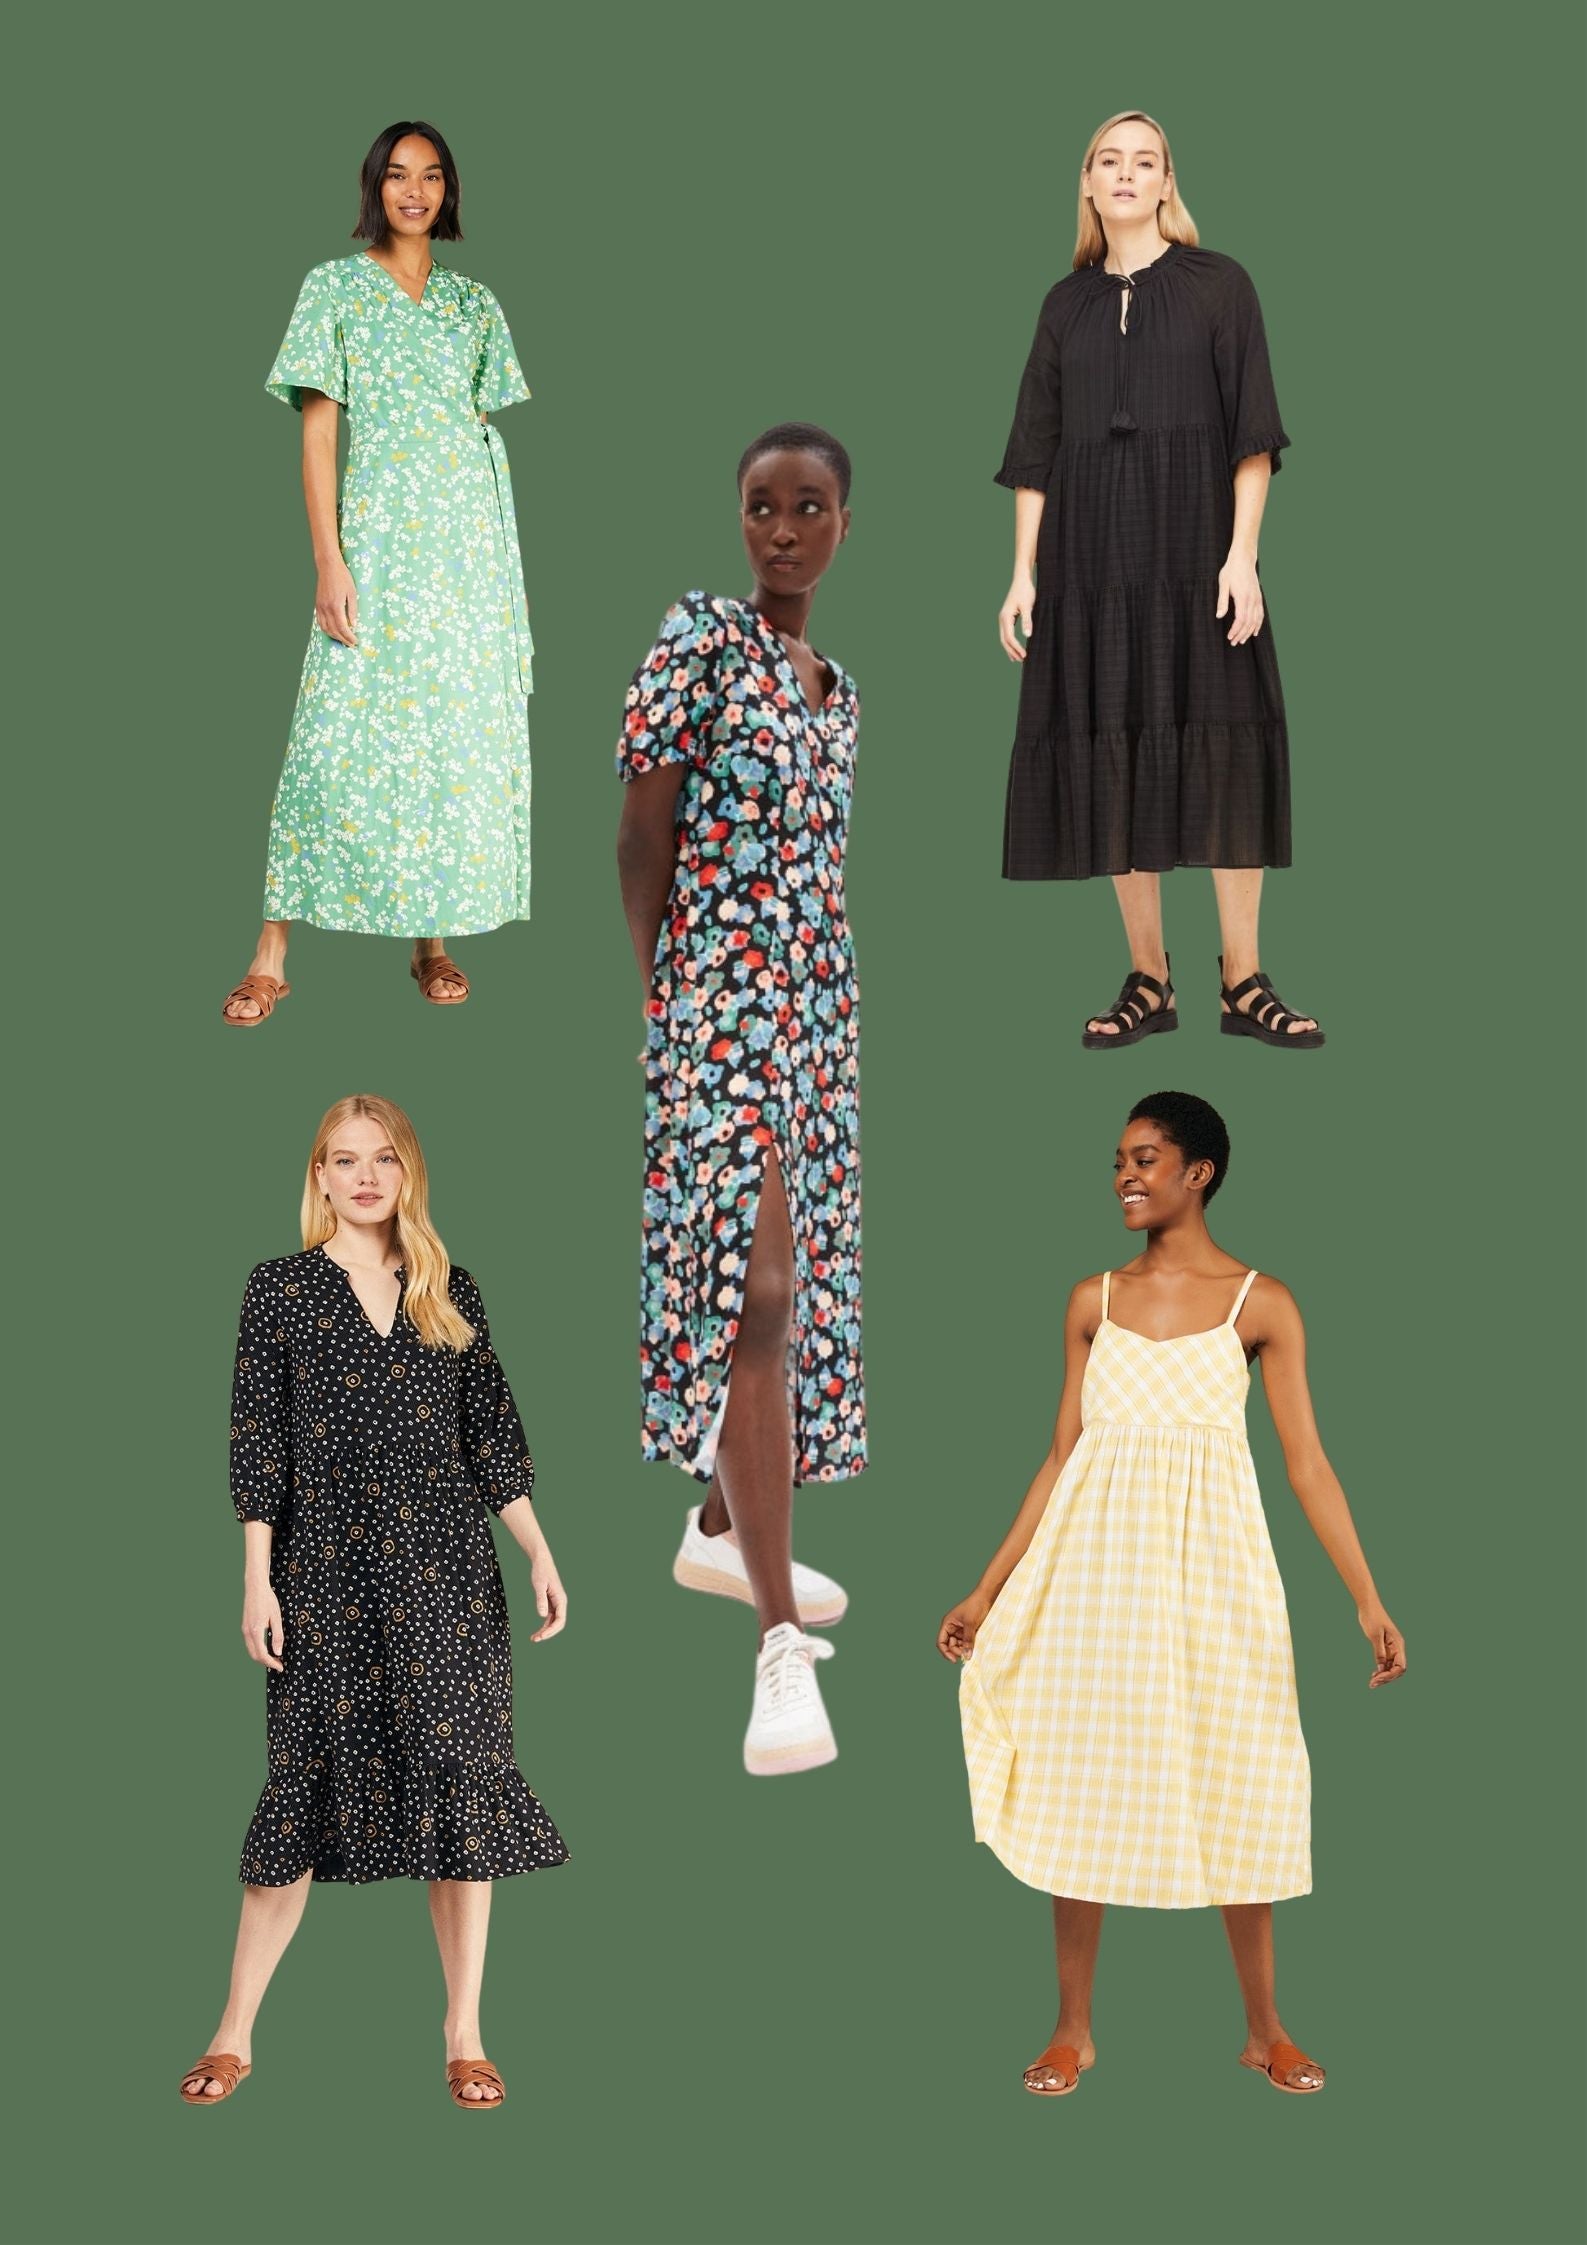 Our Top 5 Most Versatile Dresses